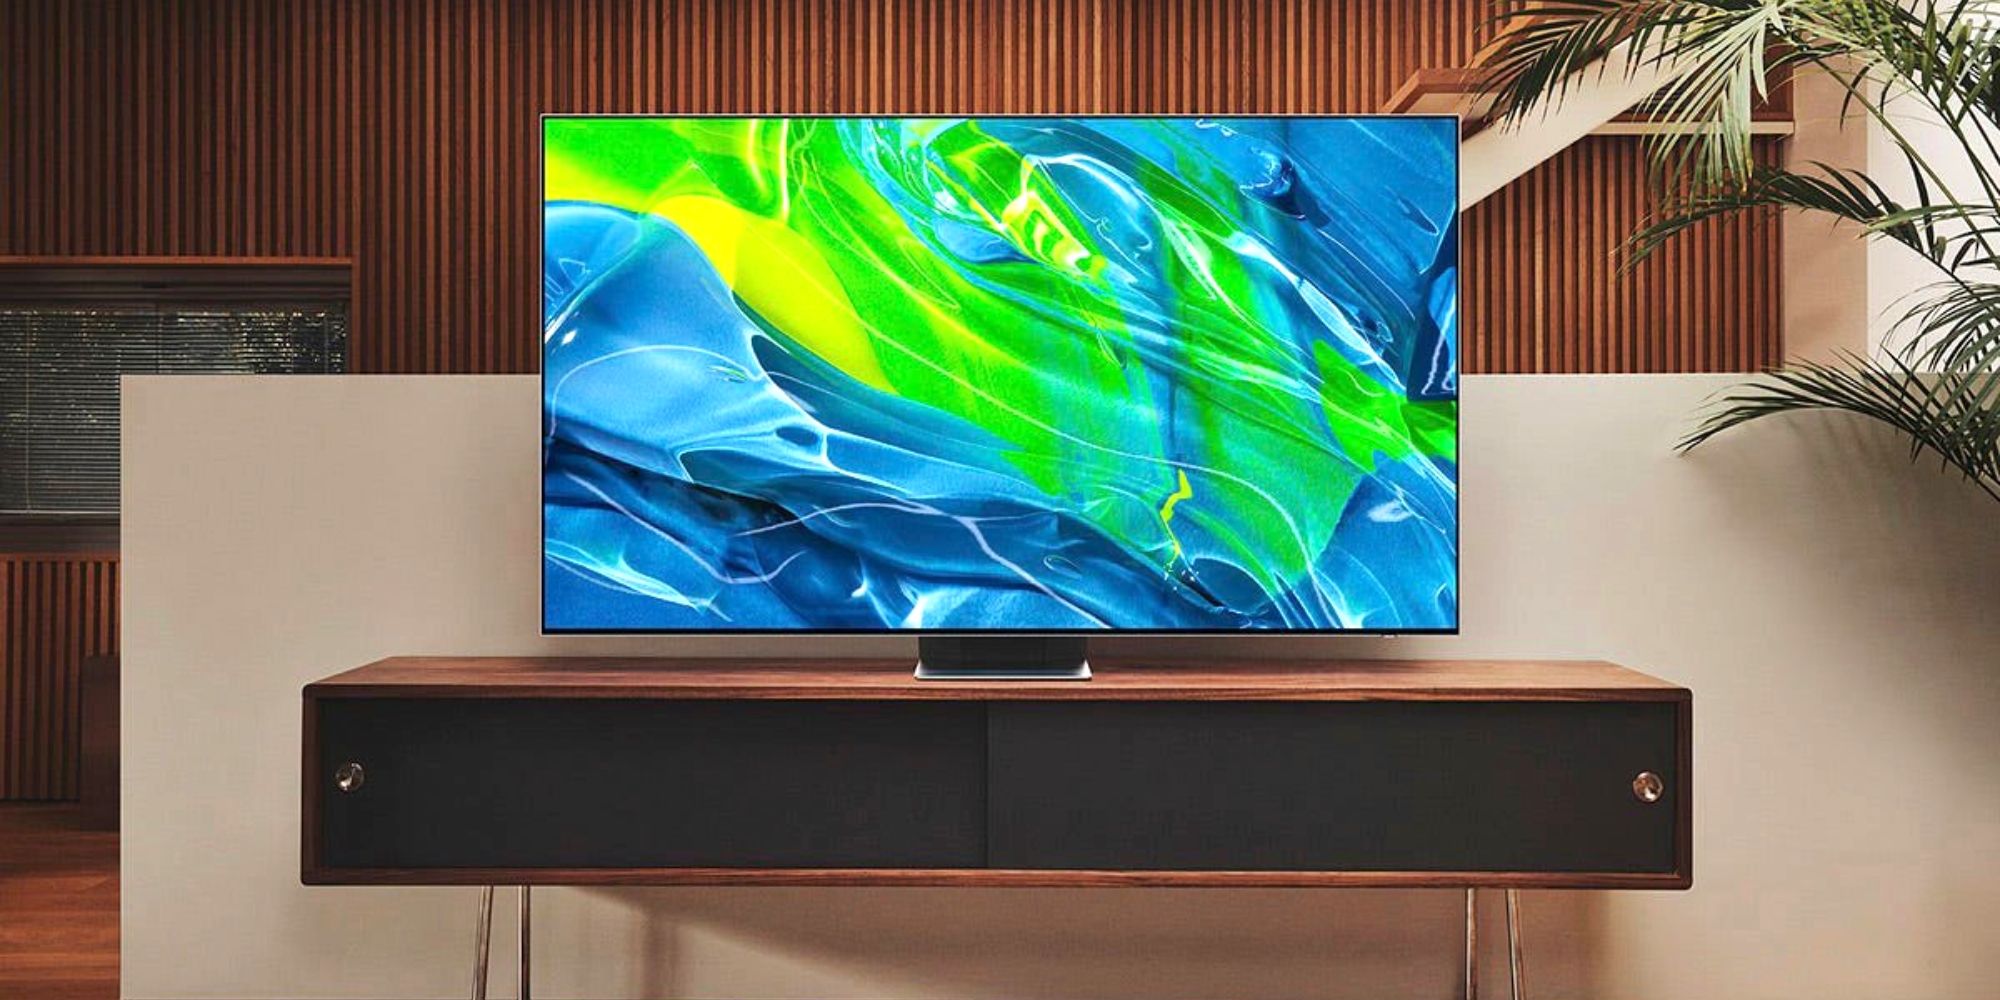 Date prisa y puedes ahorrar $400 en un televisor Samsung 4K OLED de 65 pulgadas